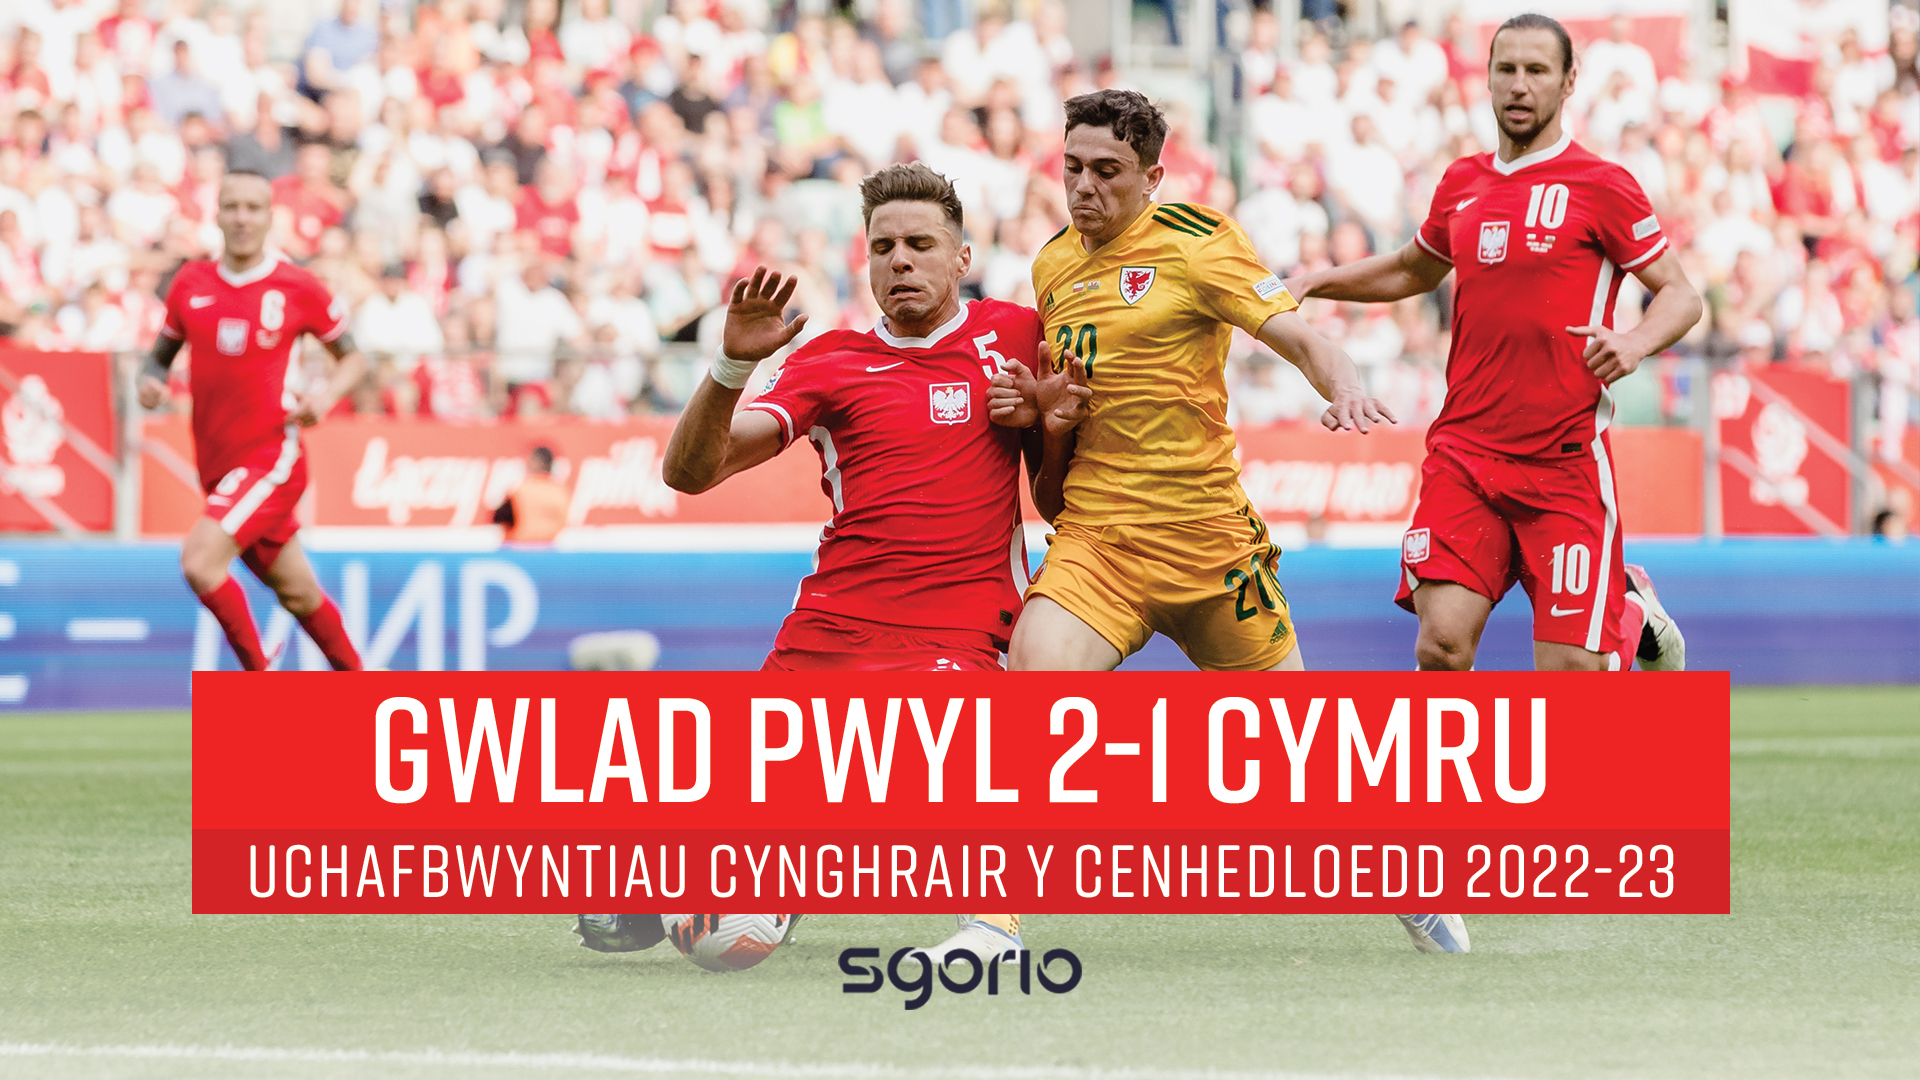 Gwlad Pwyl 2-1 Cymru | UEFA Nations League